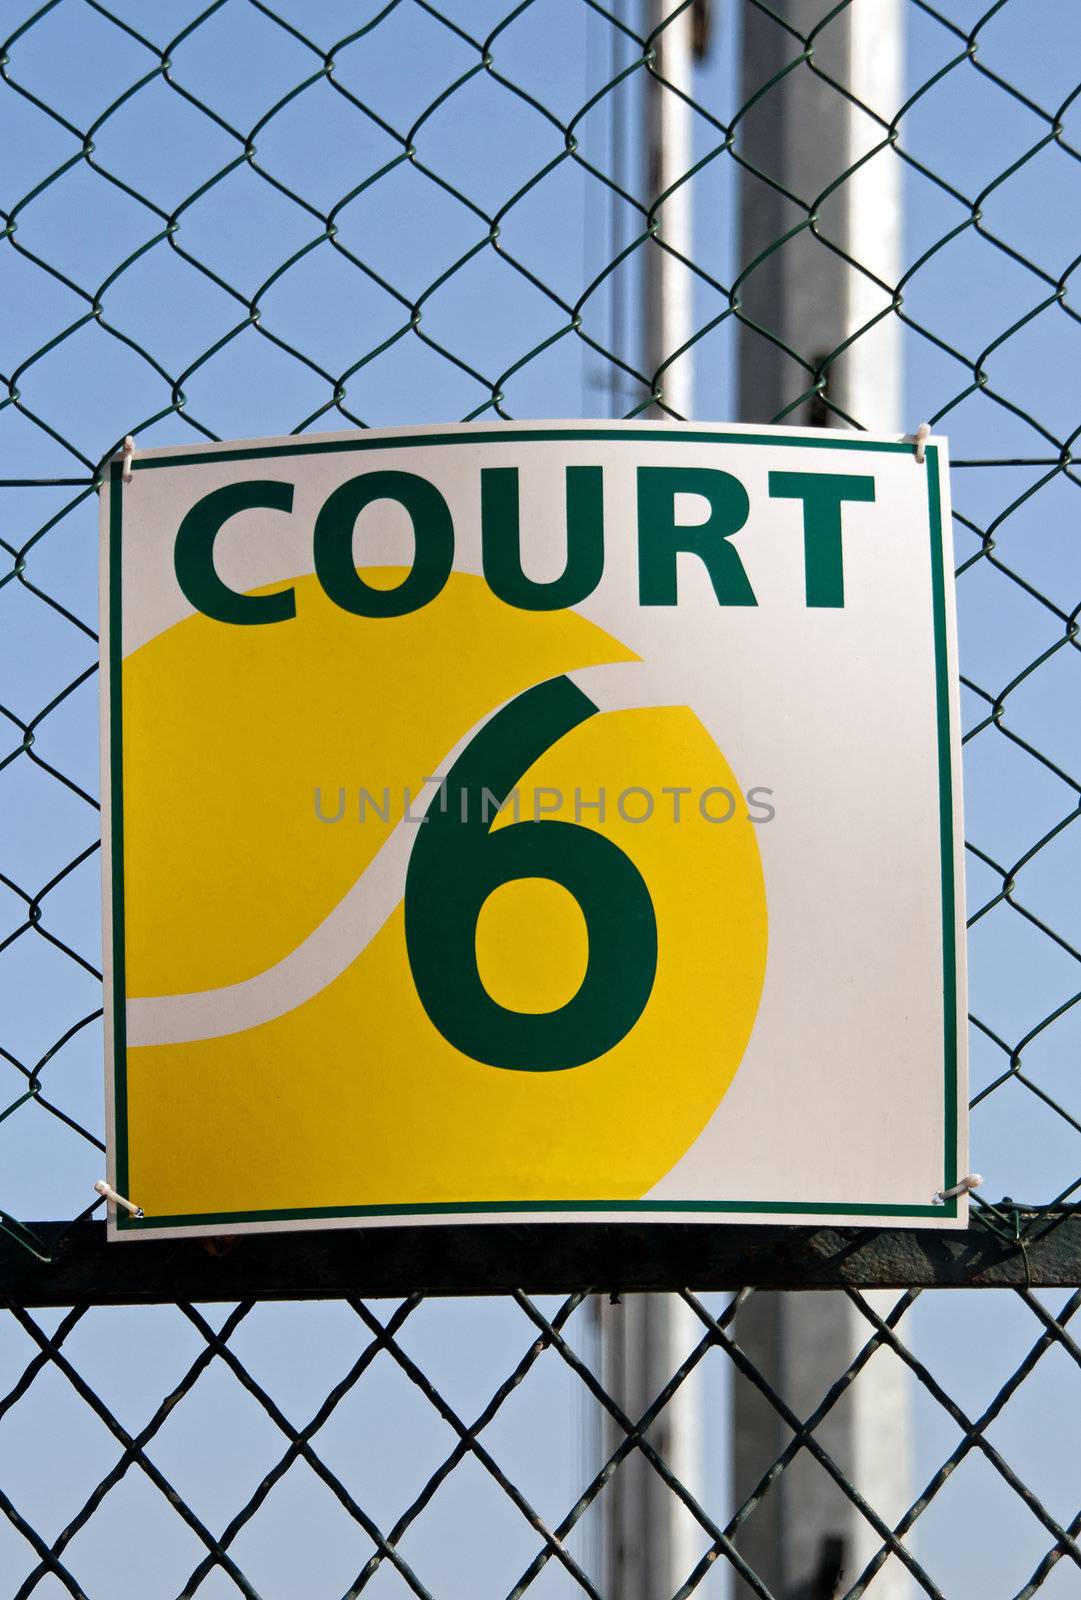 placard of a tennis court by neko92vl